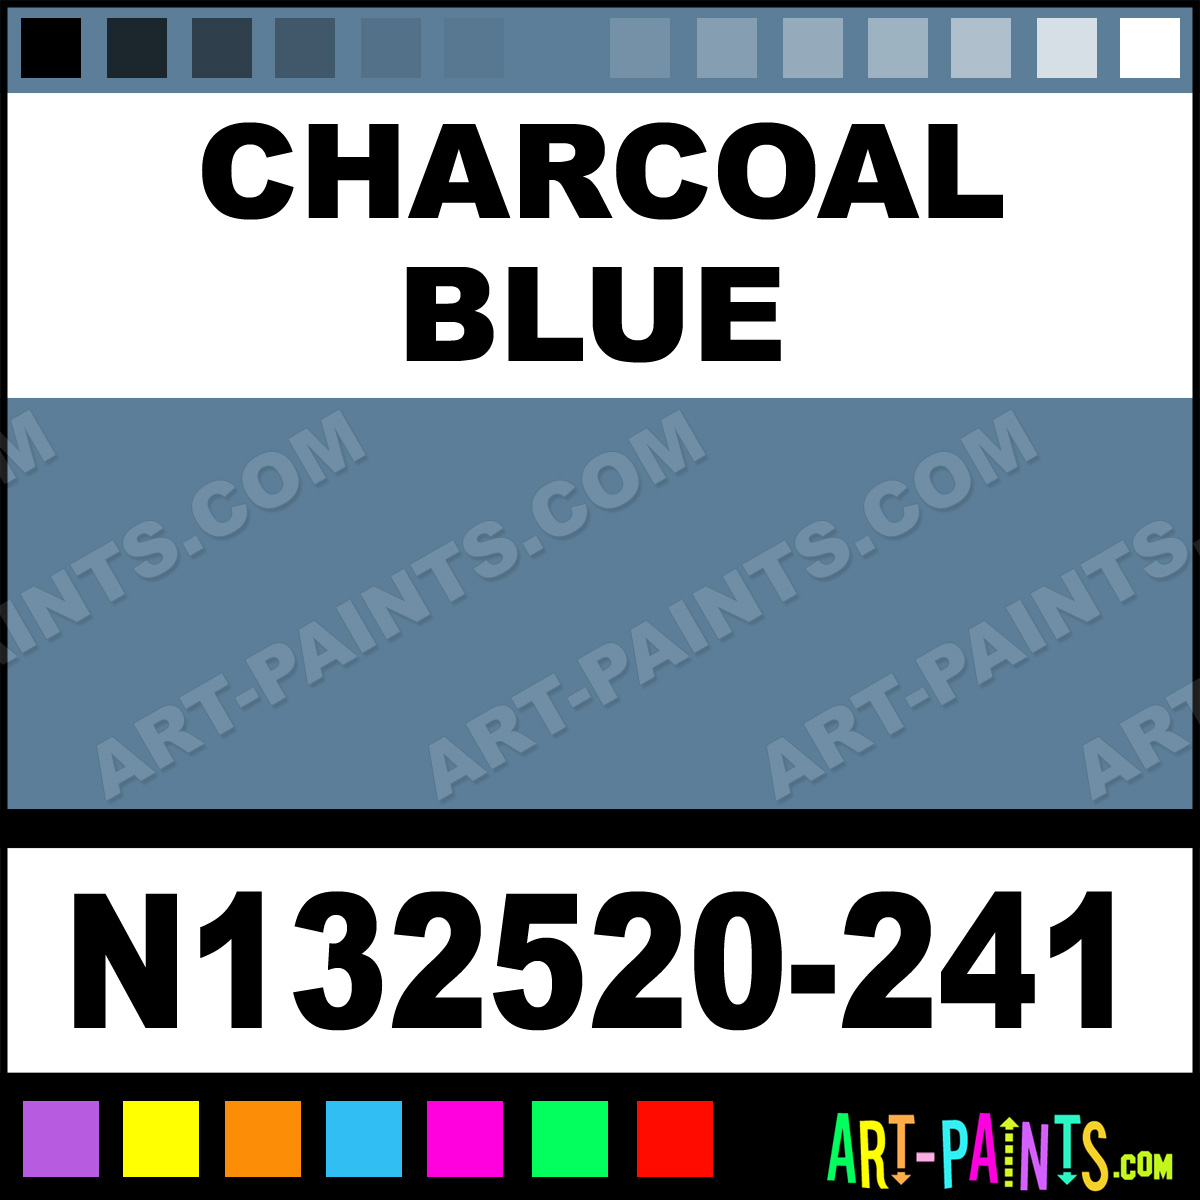 Charcoal Blue Oil Landscape 24 Pastel Paints - N132520-241 - Charcoal Blue  Paint, Charcoal Blue Color, Sennelier Oil Landscape 24 Paint, 5B7D98 